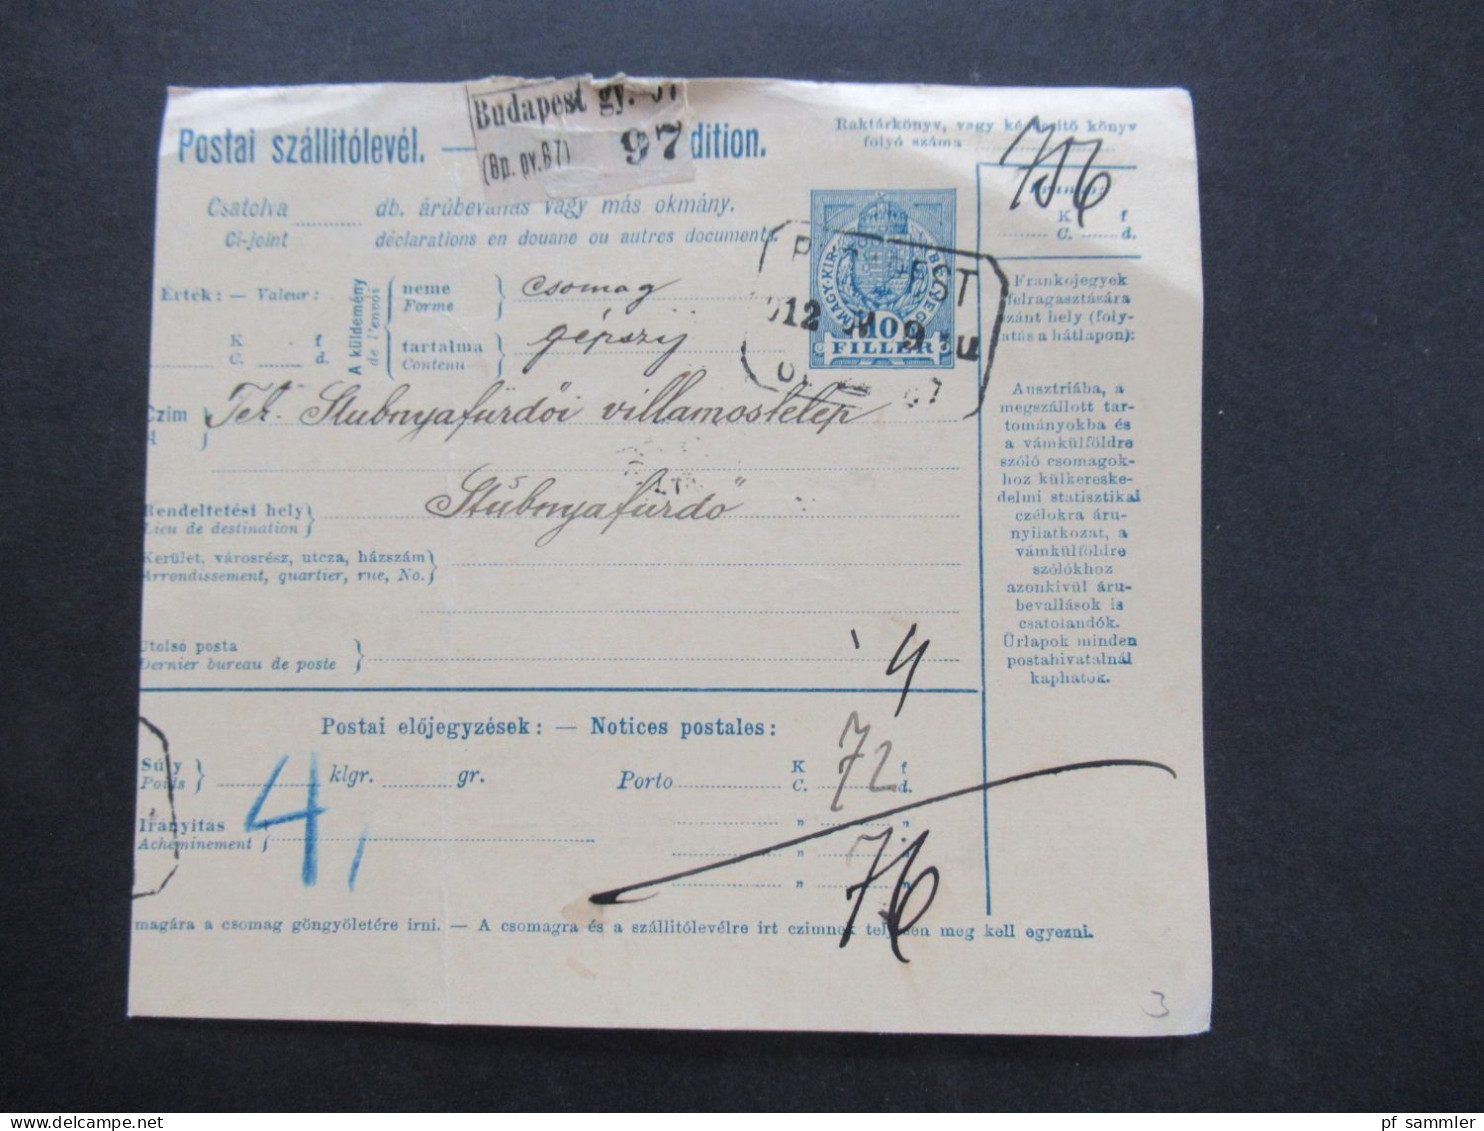 Ungarn 1913 4x Paketkarte ab Budapest nach Stubnya Fürdo mit vielen Stempeln und Vermerken!!